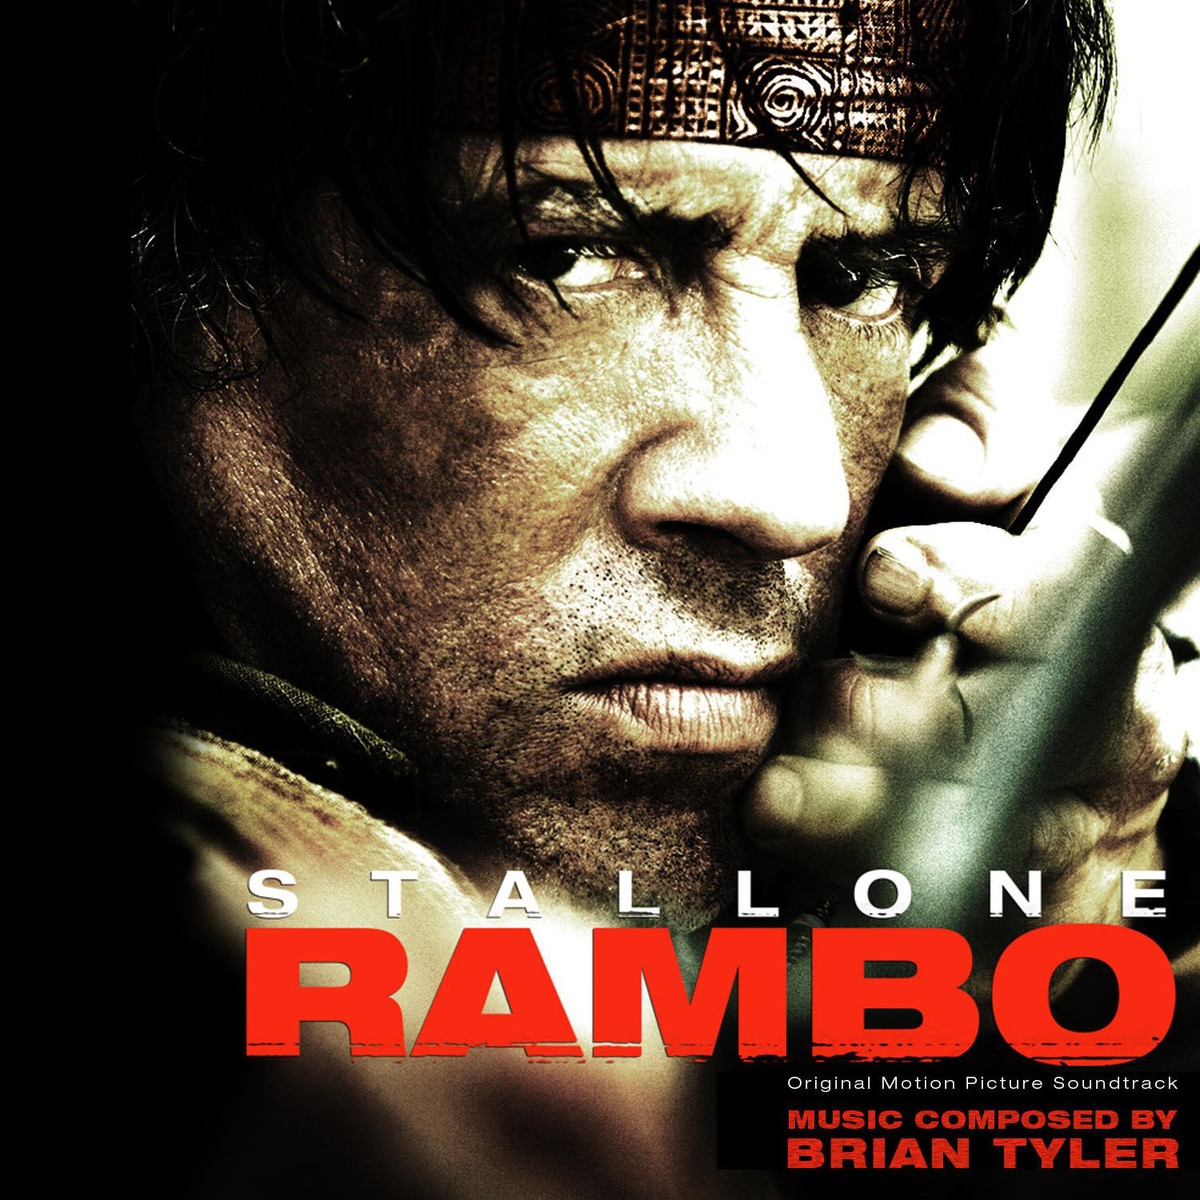 Rambo Returns